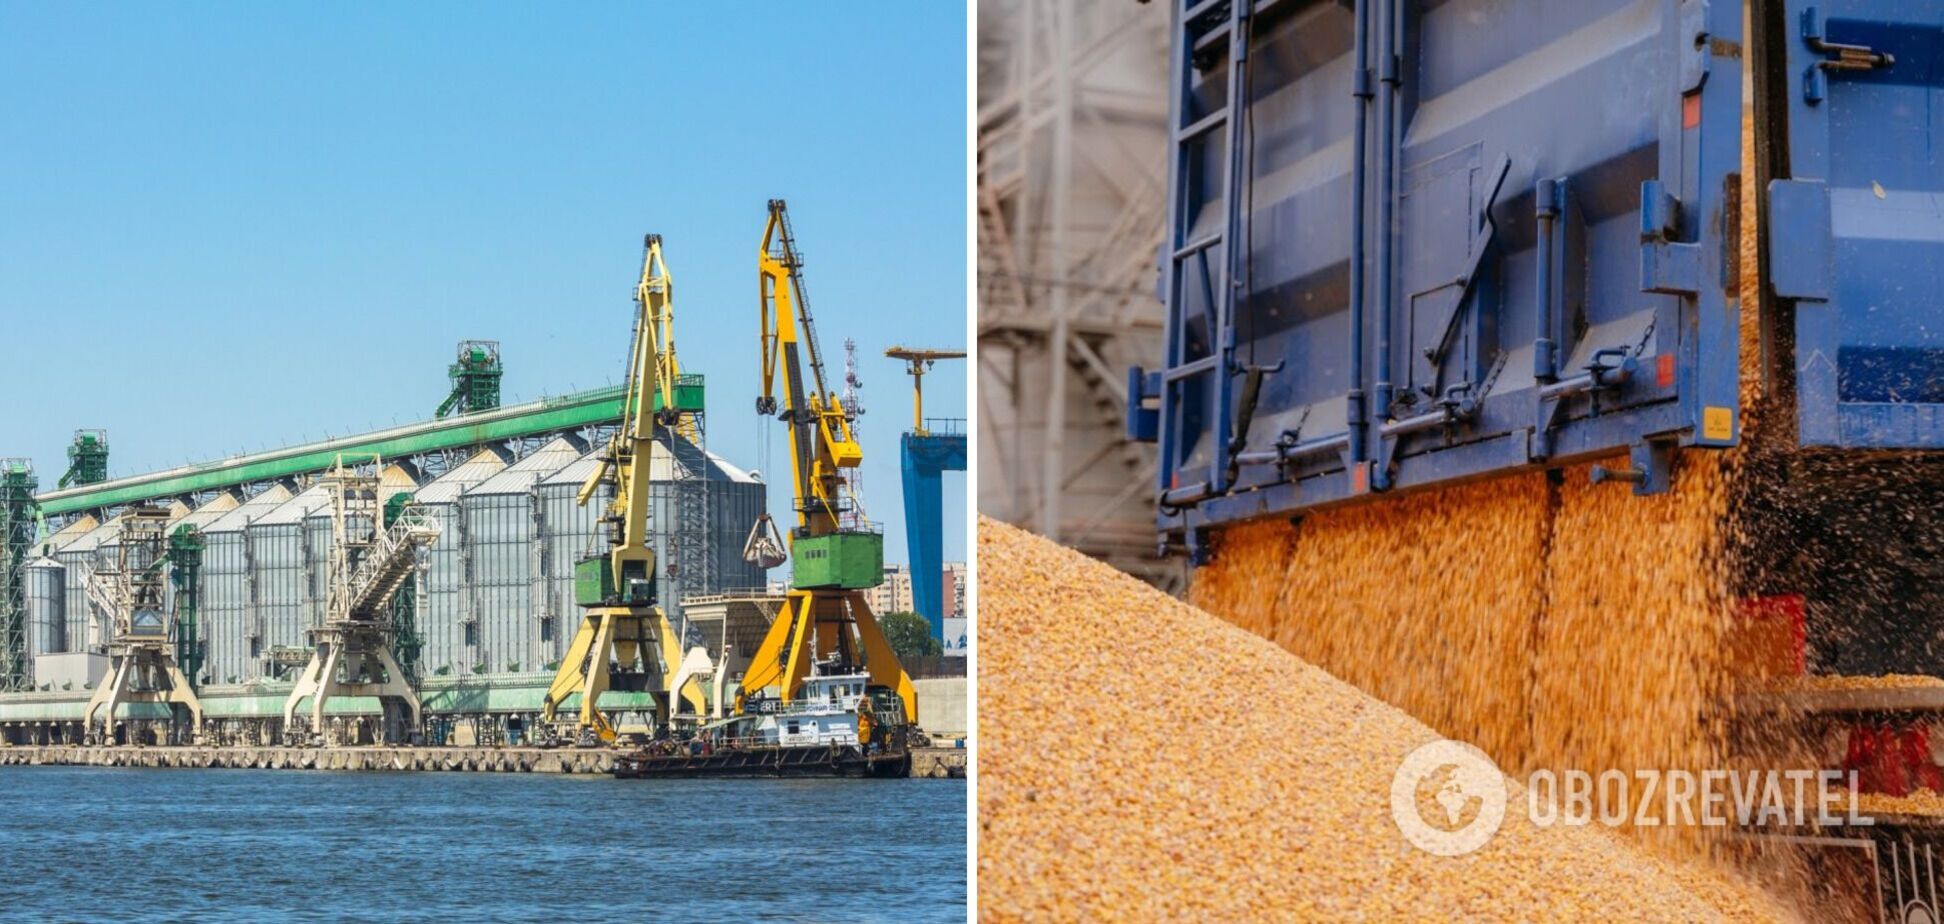 Украина теперь экспортирует кукурузу через порт Констанца 